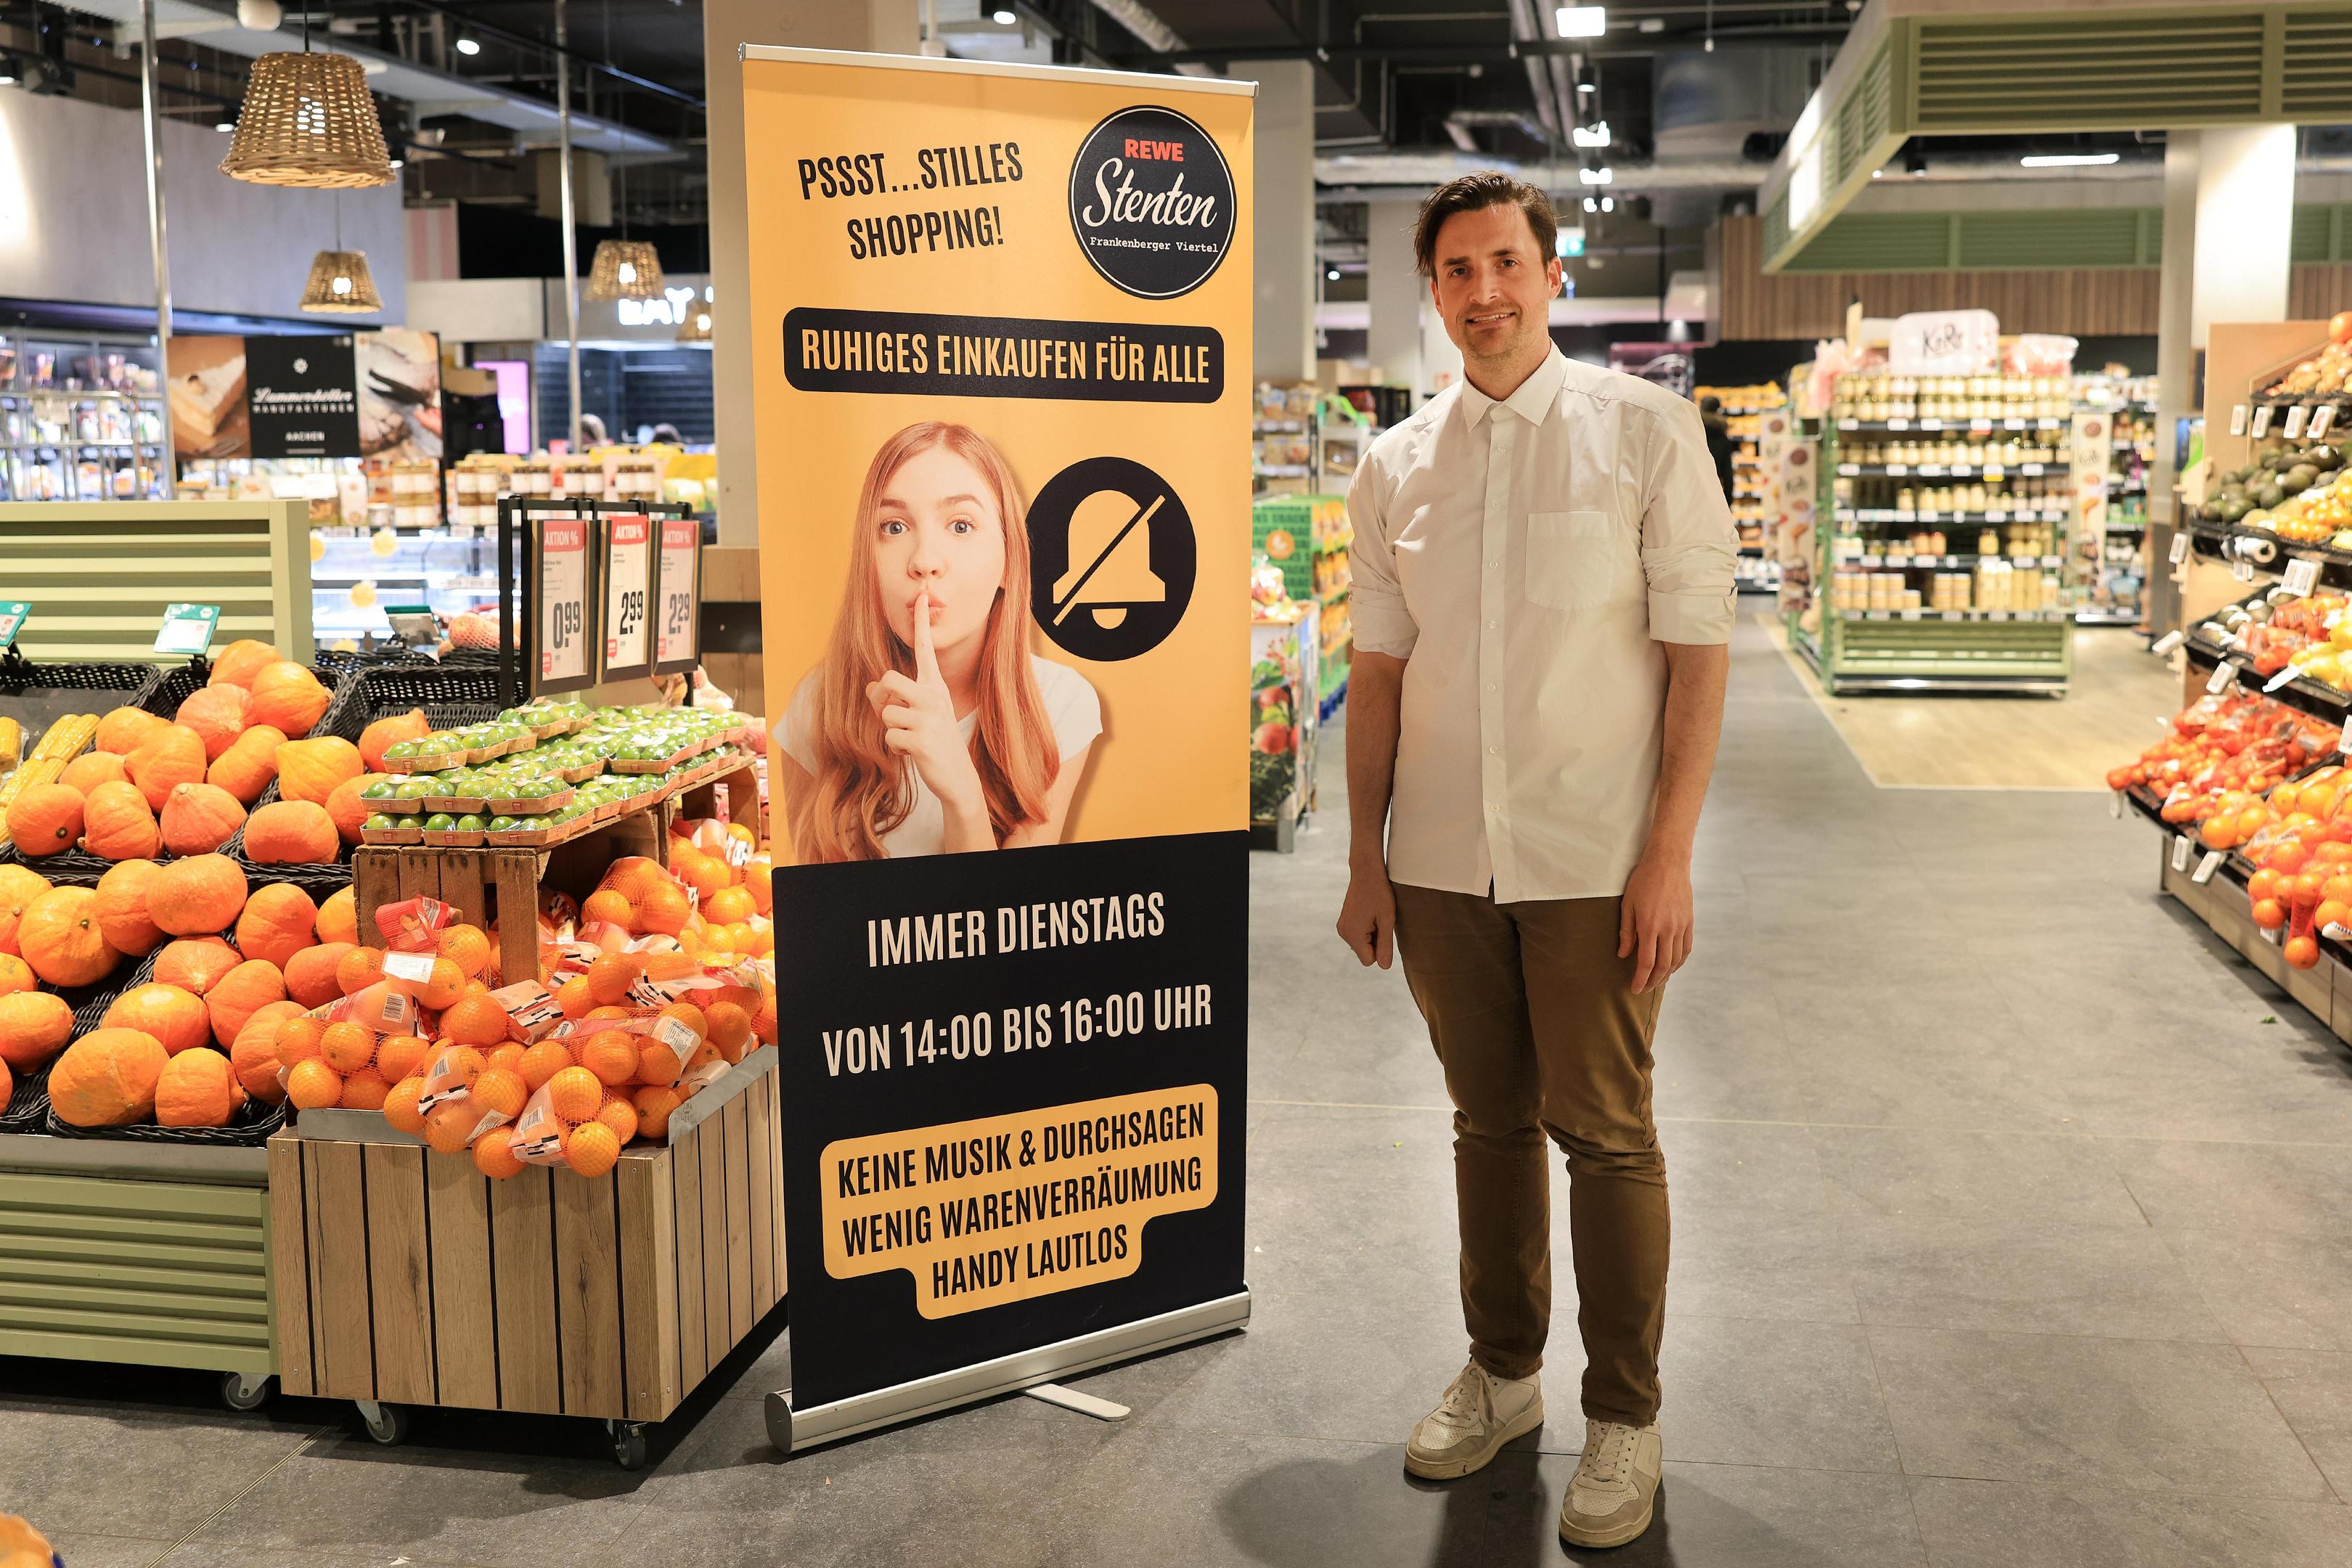 Max Stenten bietet jede Woche für zwei Stunden ein ruhigeres Einkaufen im Supermarkt an der Bismarckstraße an.